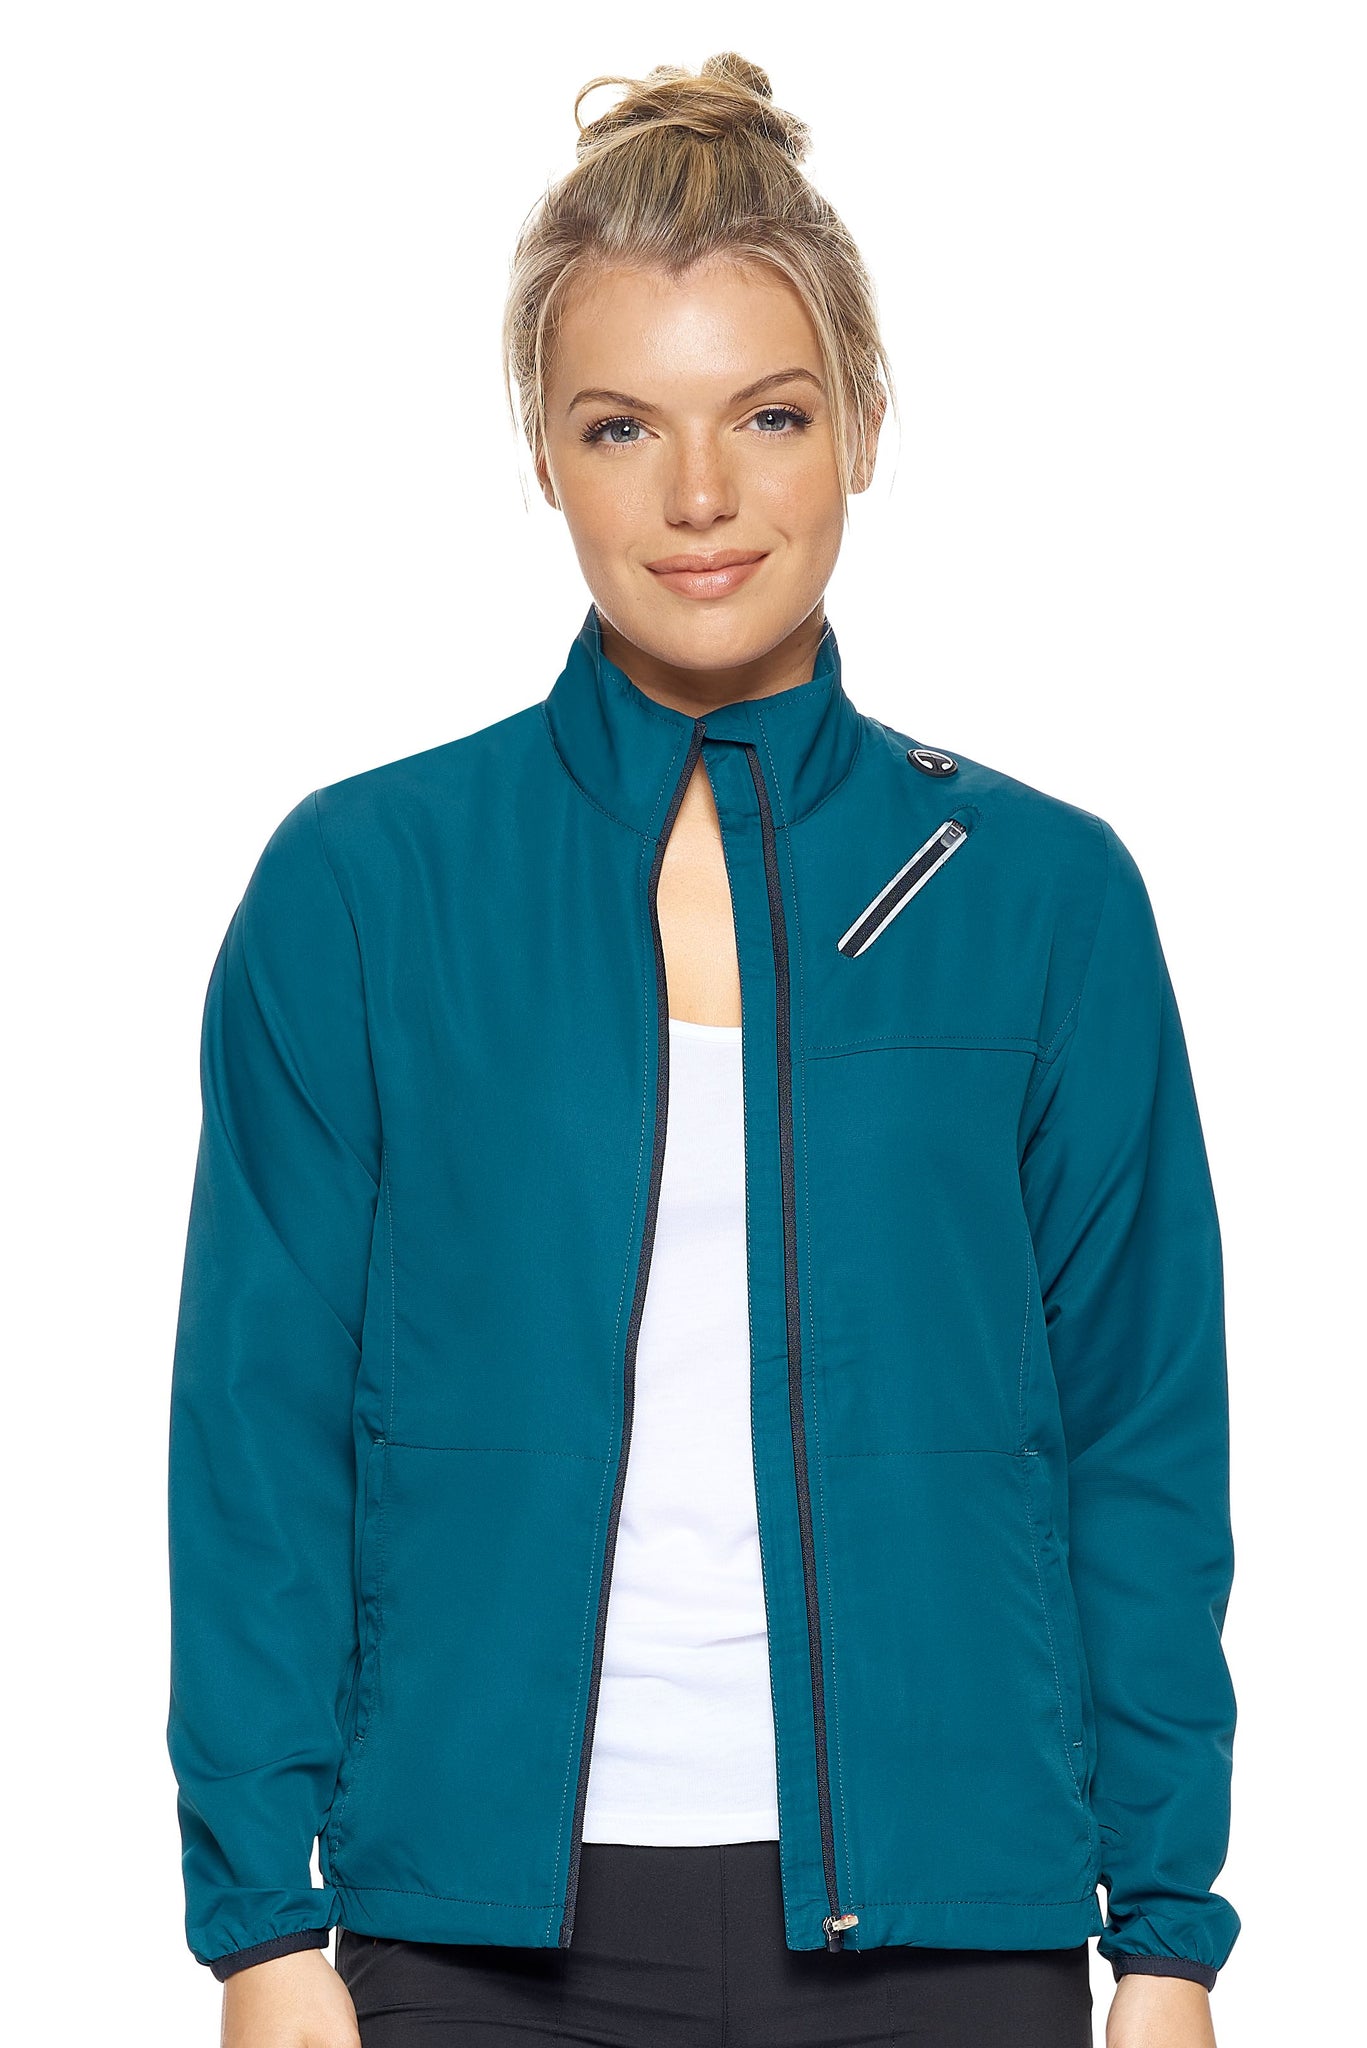 Expert Brand Wholesale Women's Water Resistant Run Away Jacket in emerald#emerald